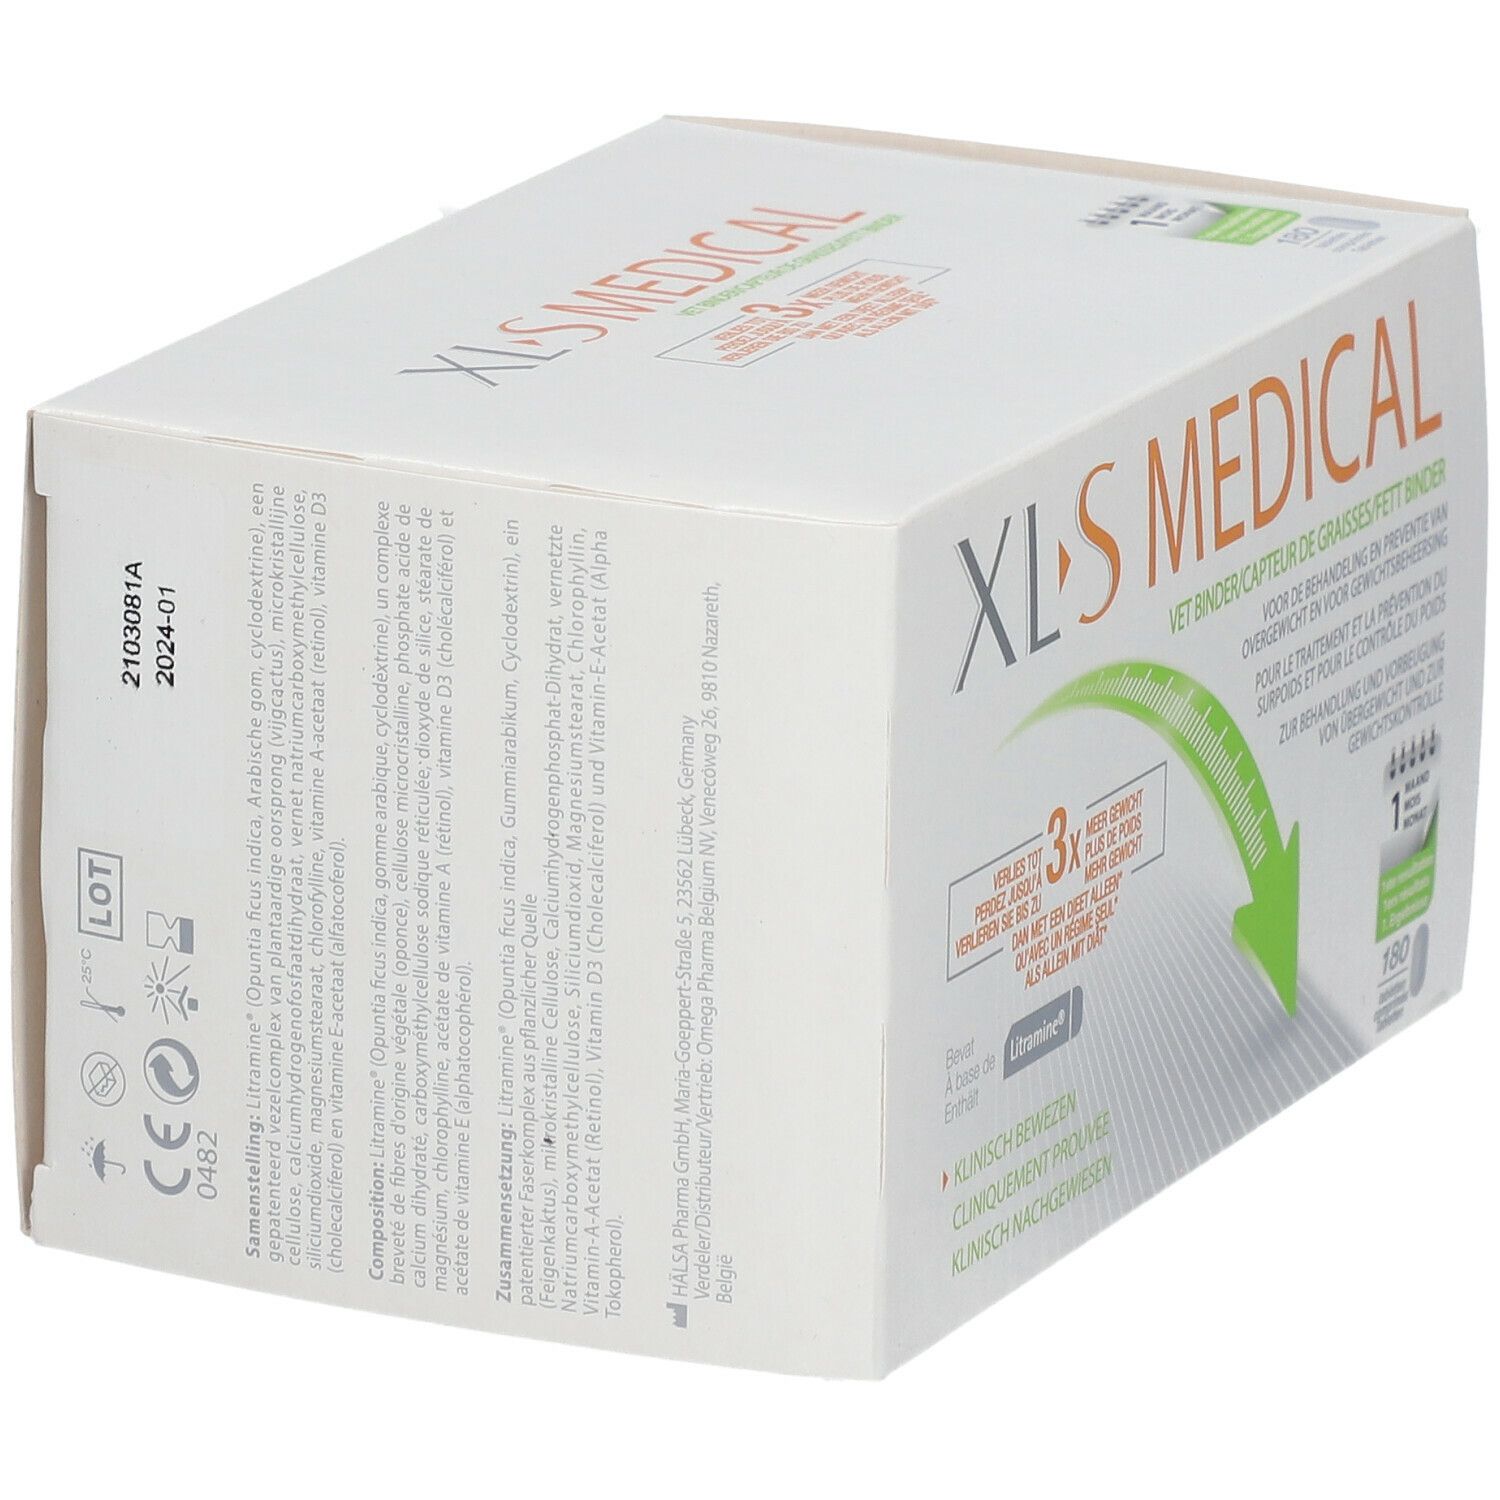 XLS Medical Cattura Grassi